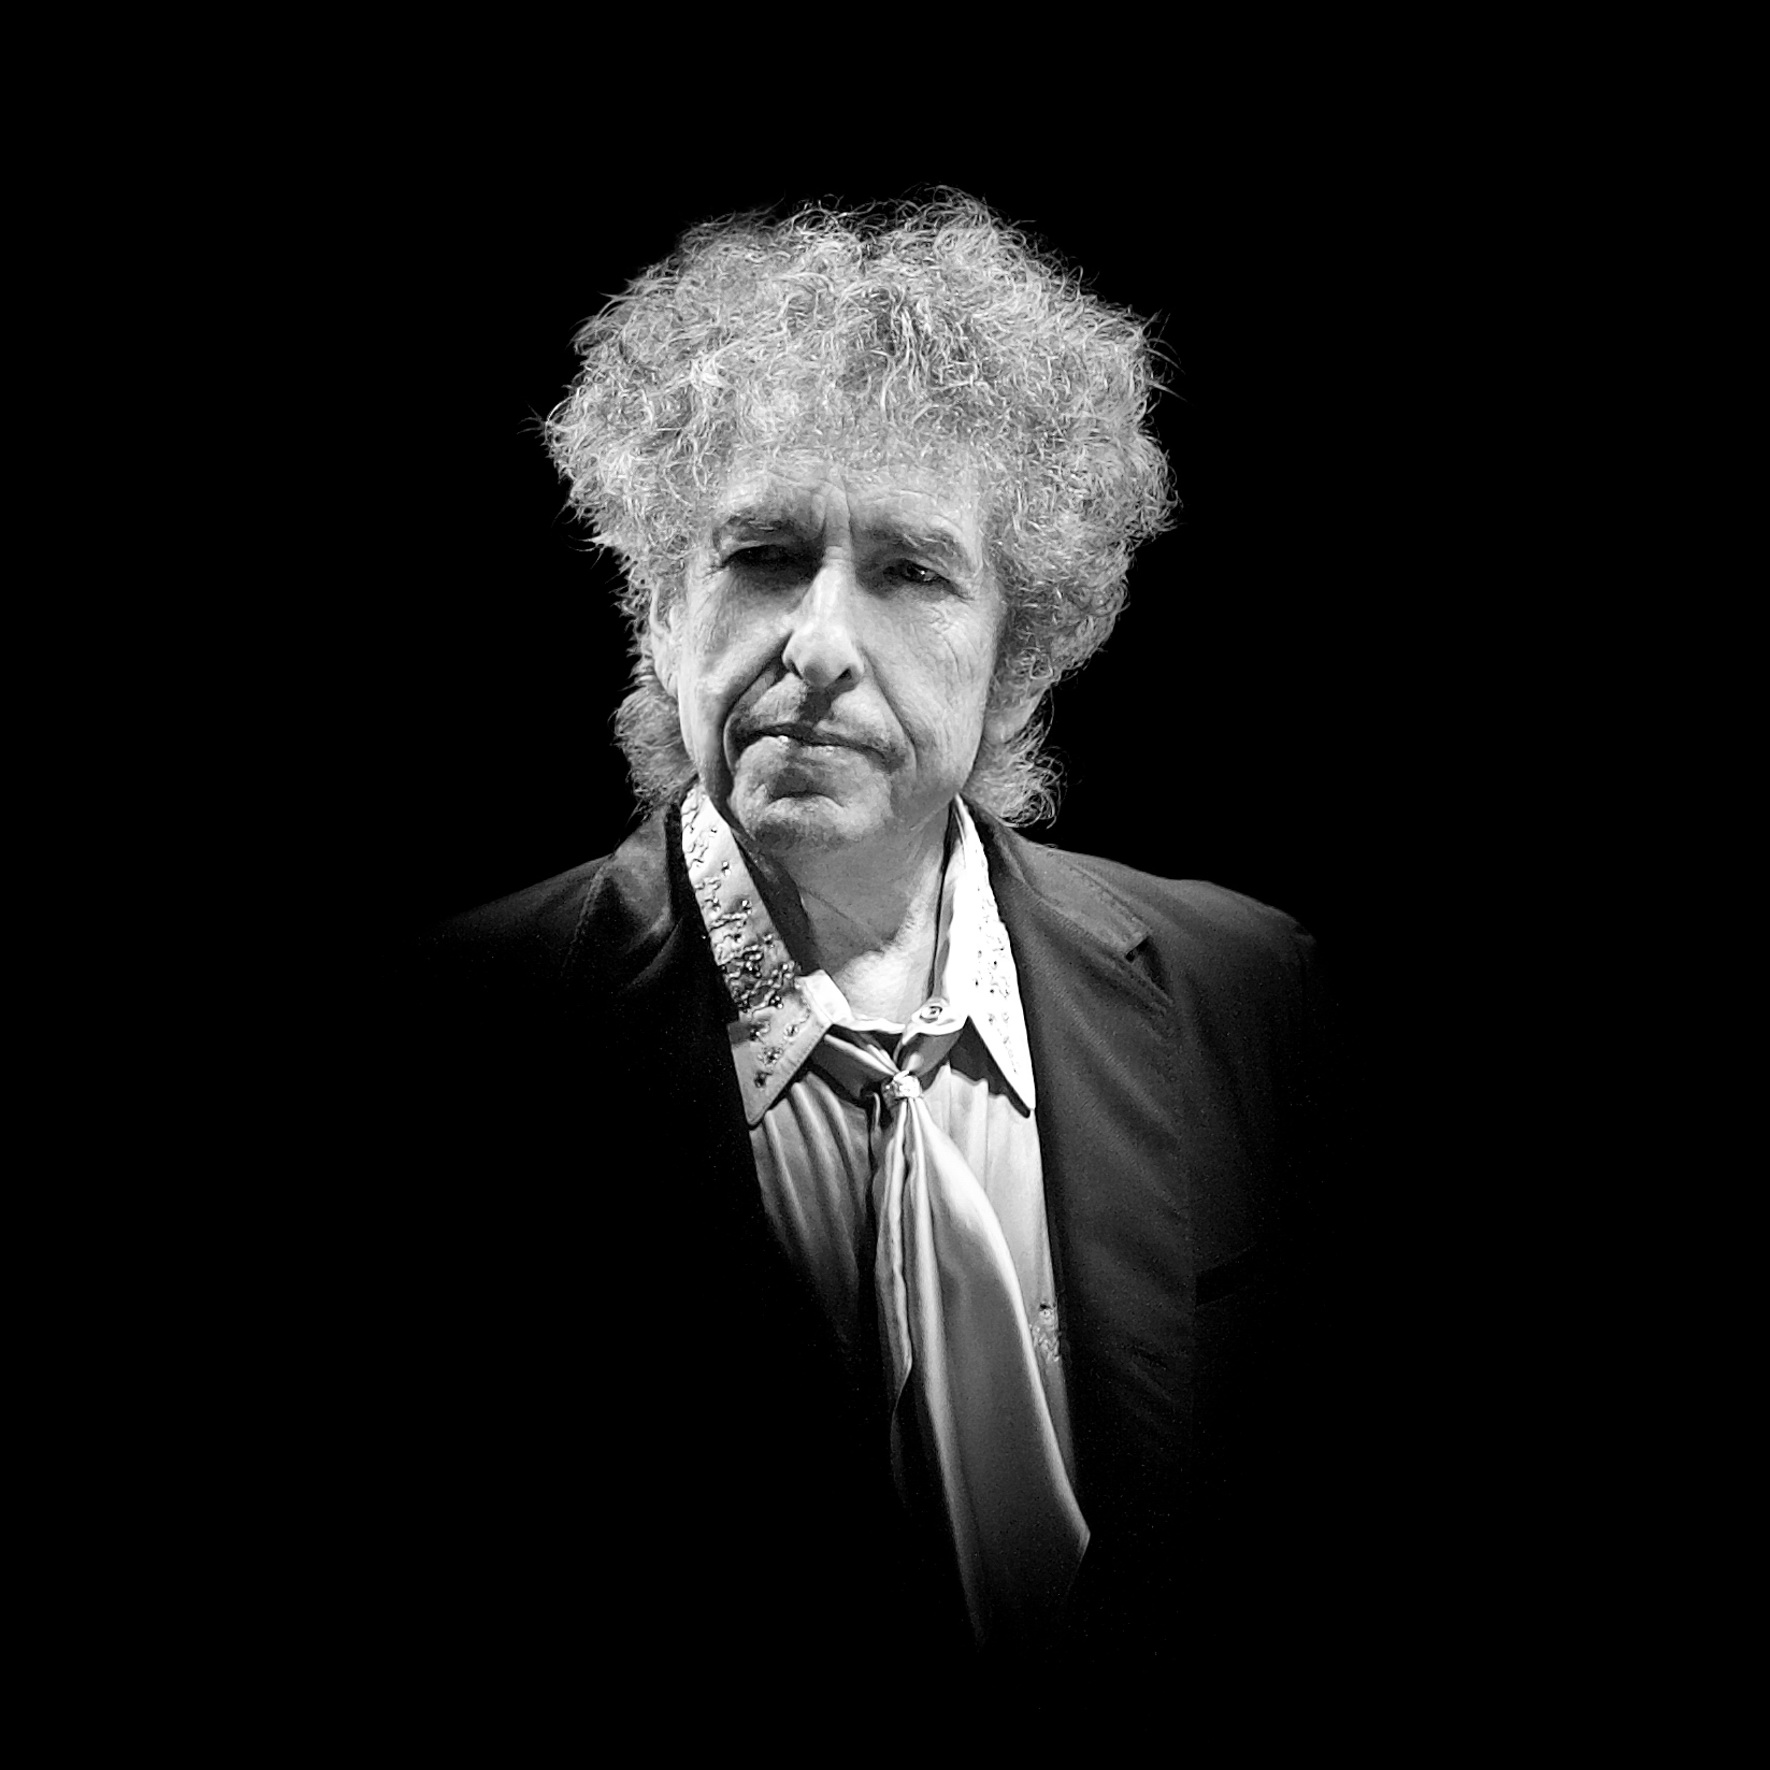 Paolo Brillo, Bob Dylan, London 27.11.2013, stampa a getto di inchiostro su carta fine art, 2013-2023, cm 40×40